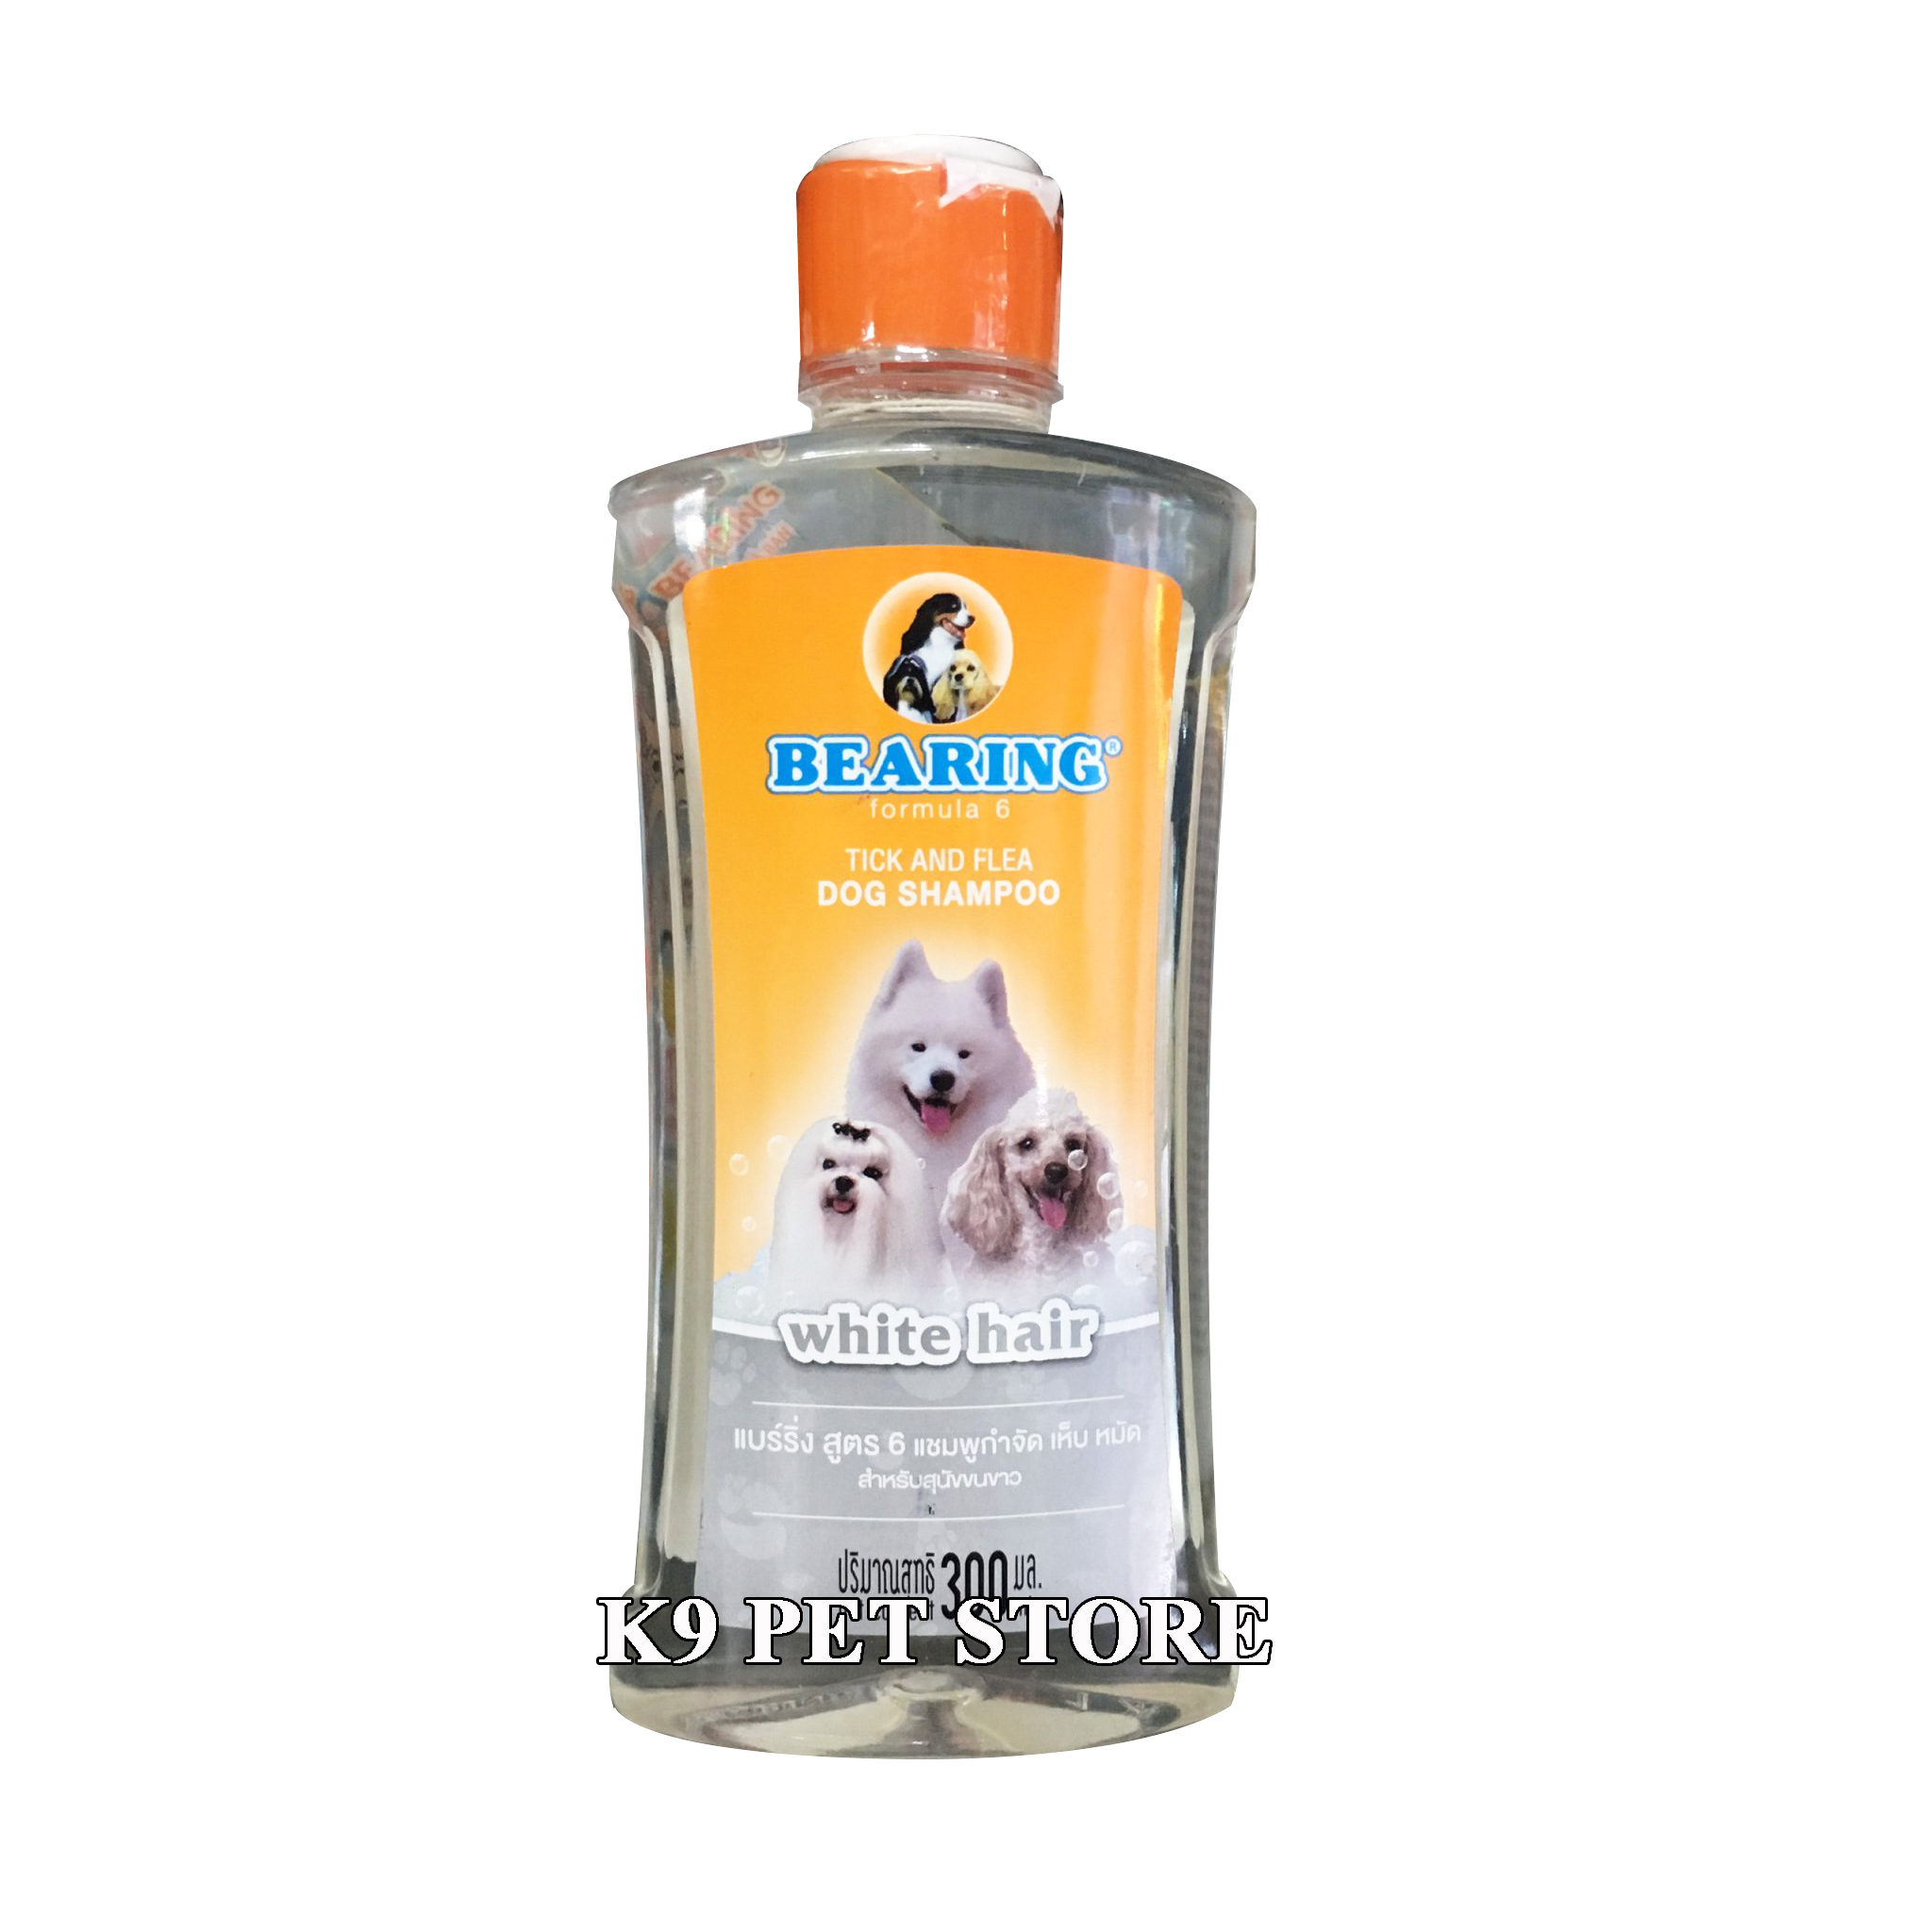 Sữa tắm trị ve Bearing Tick & Flea Dog Shampoo cho chó lông trắng 300ml